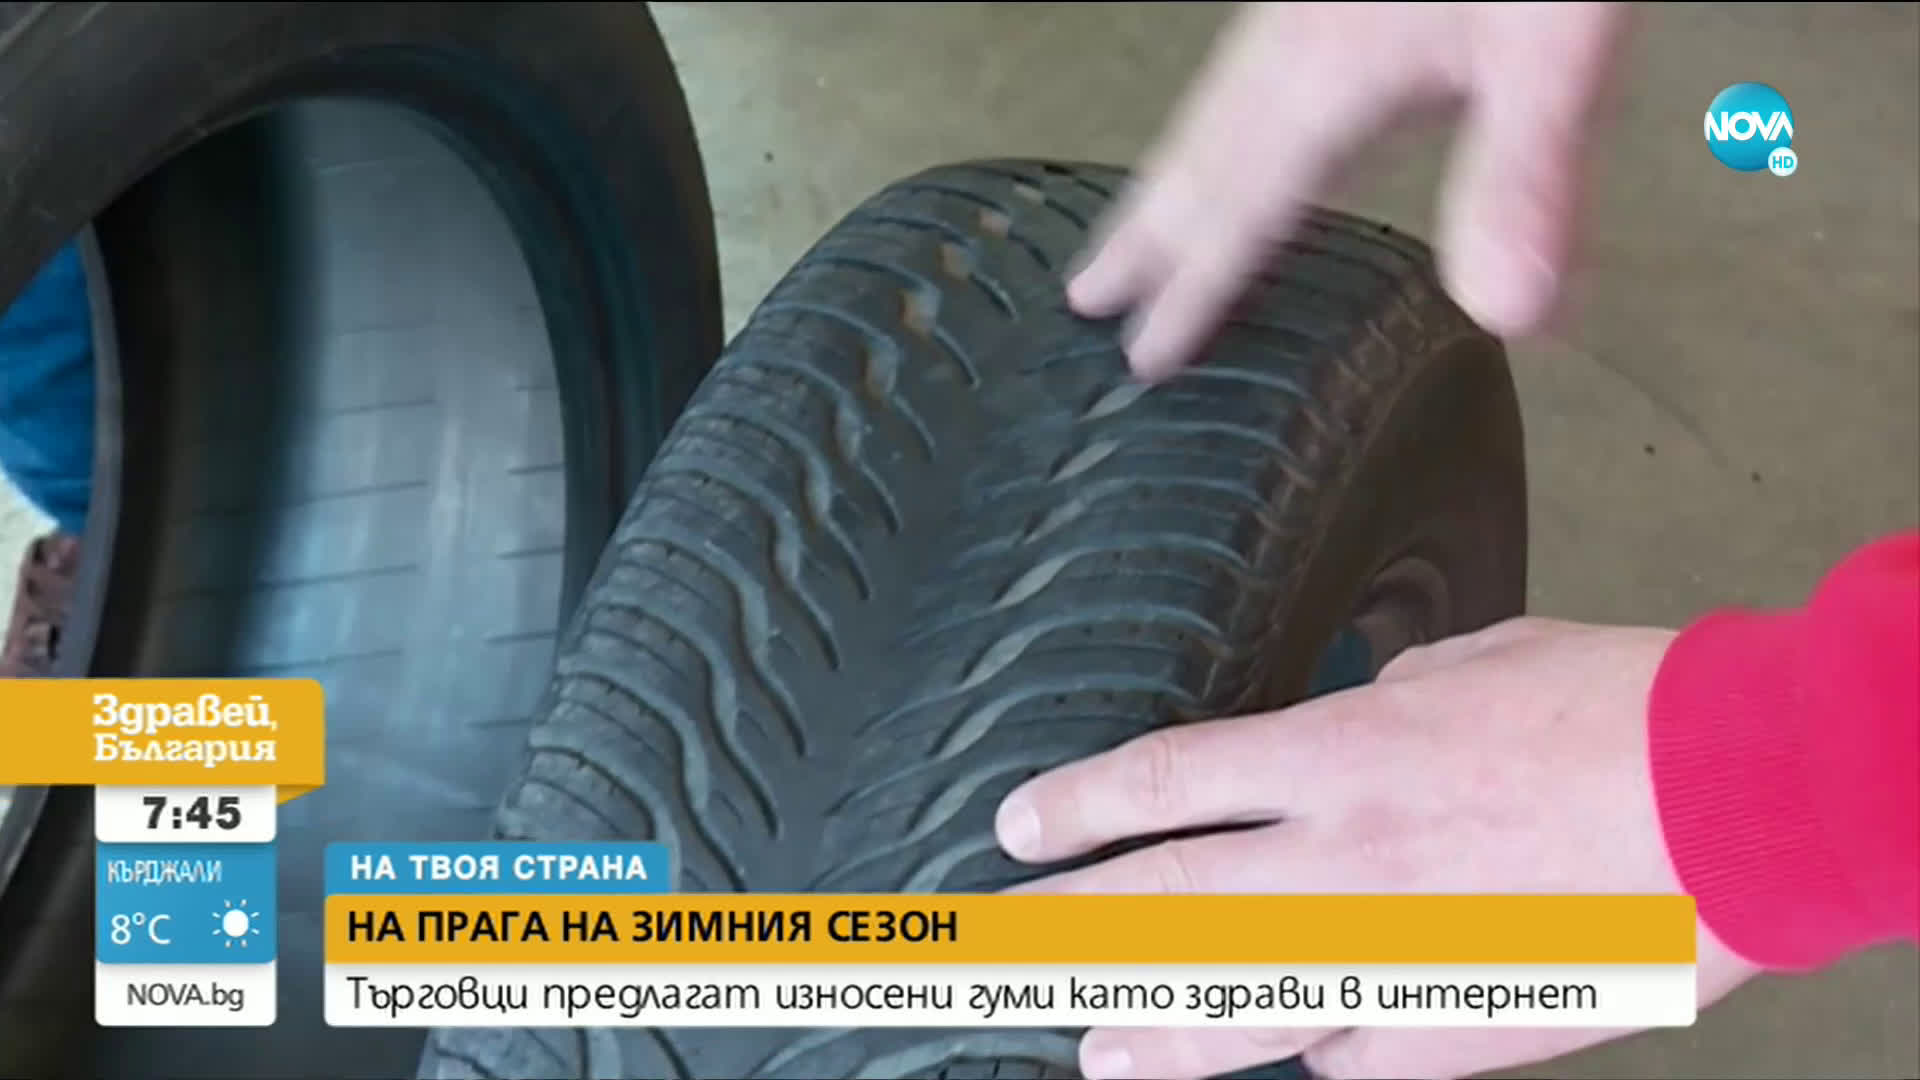 "НА ТВОЯ СТРАНА": Търговци предлагат износени гуми като здрави в интернет